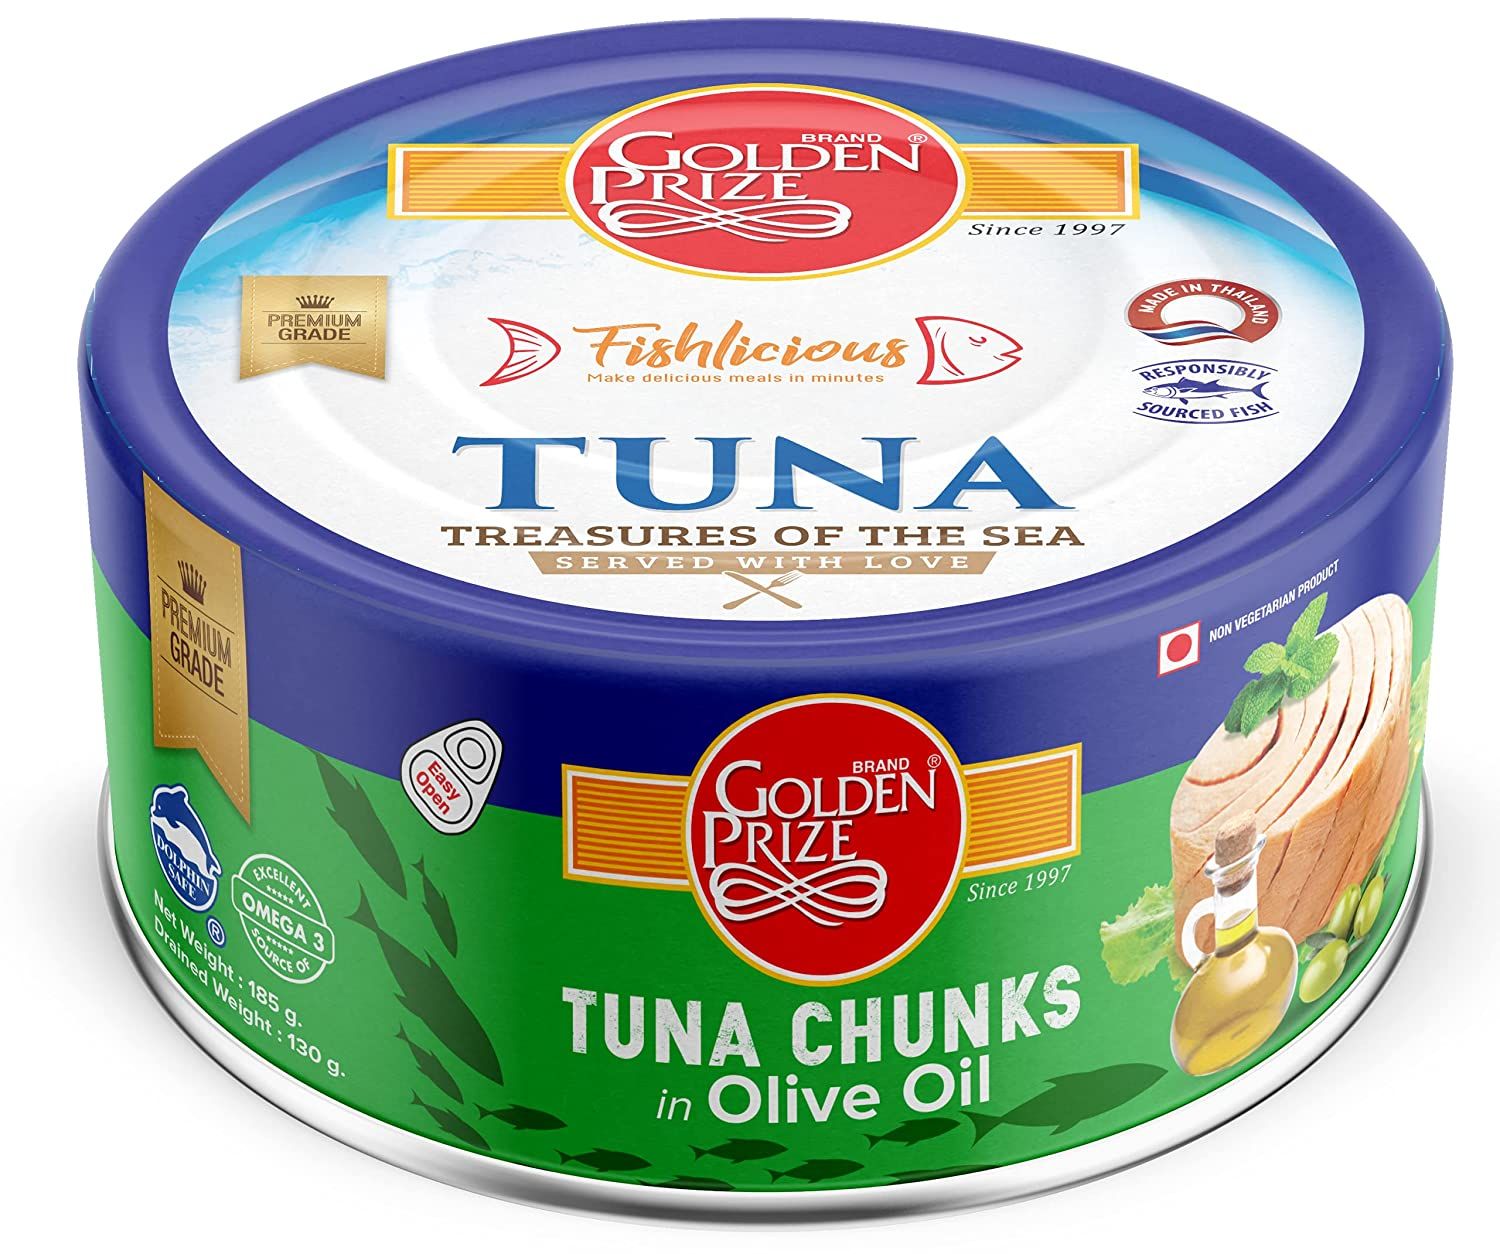 Golden Prize Tuna Chunks in Olive Oil Image